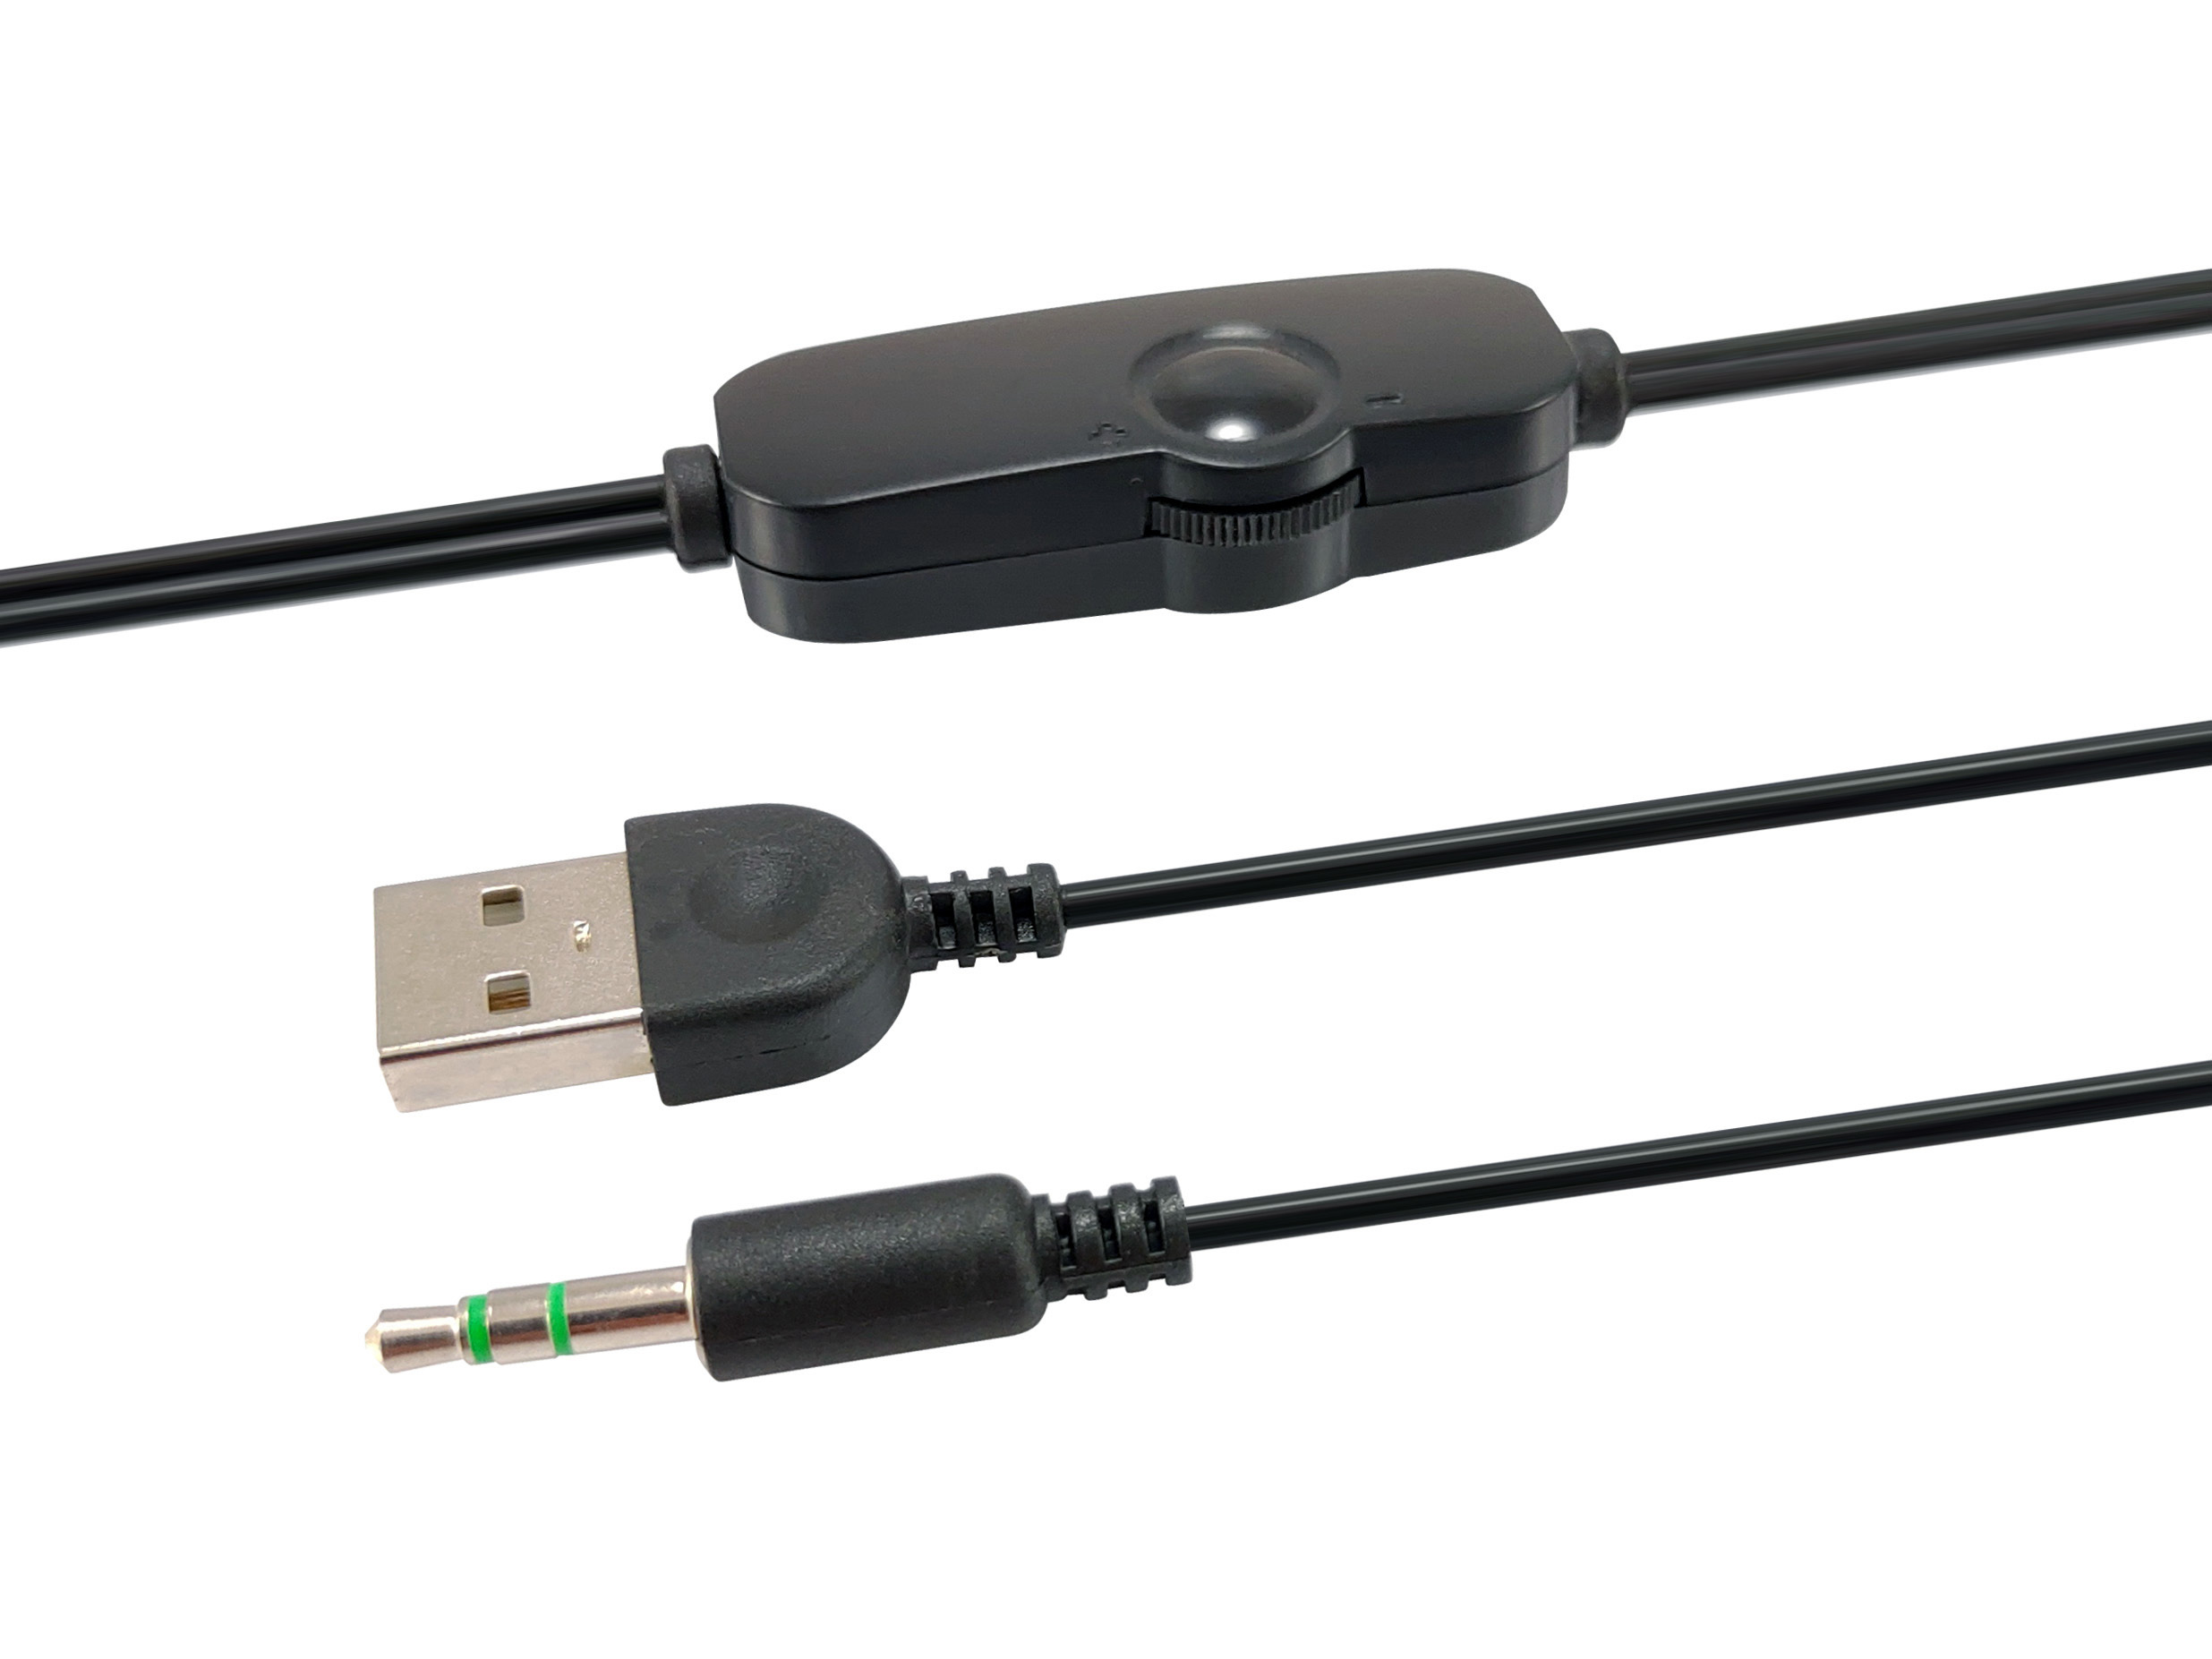 Equip Lautsprecher Mini für Notebook/PC, USB Powered sw/sw